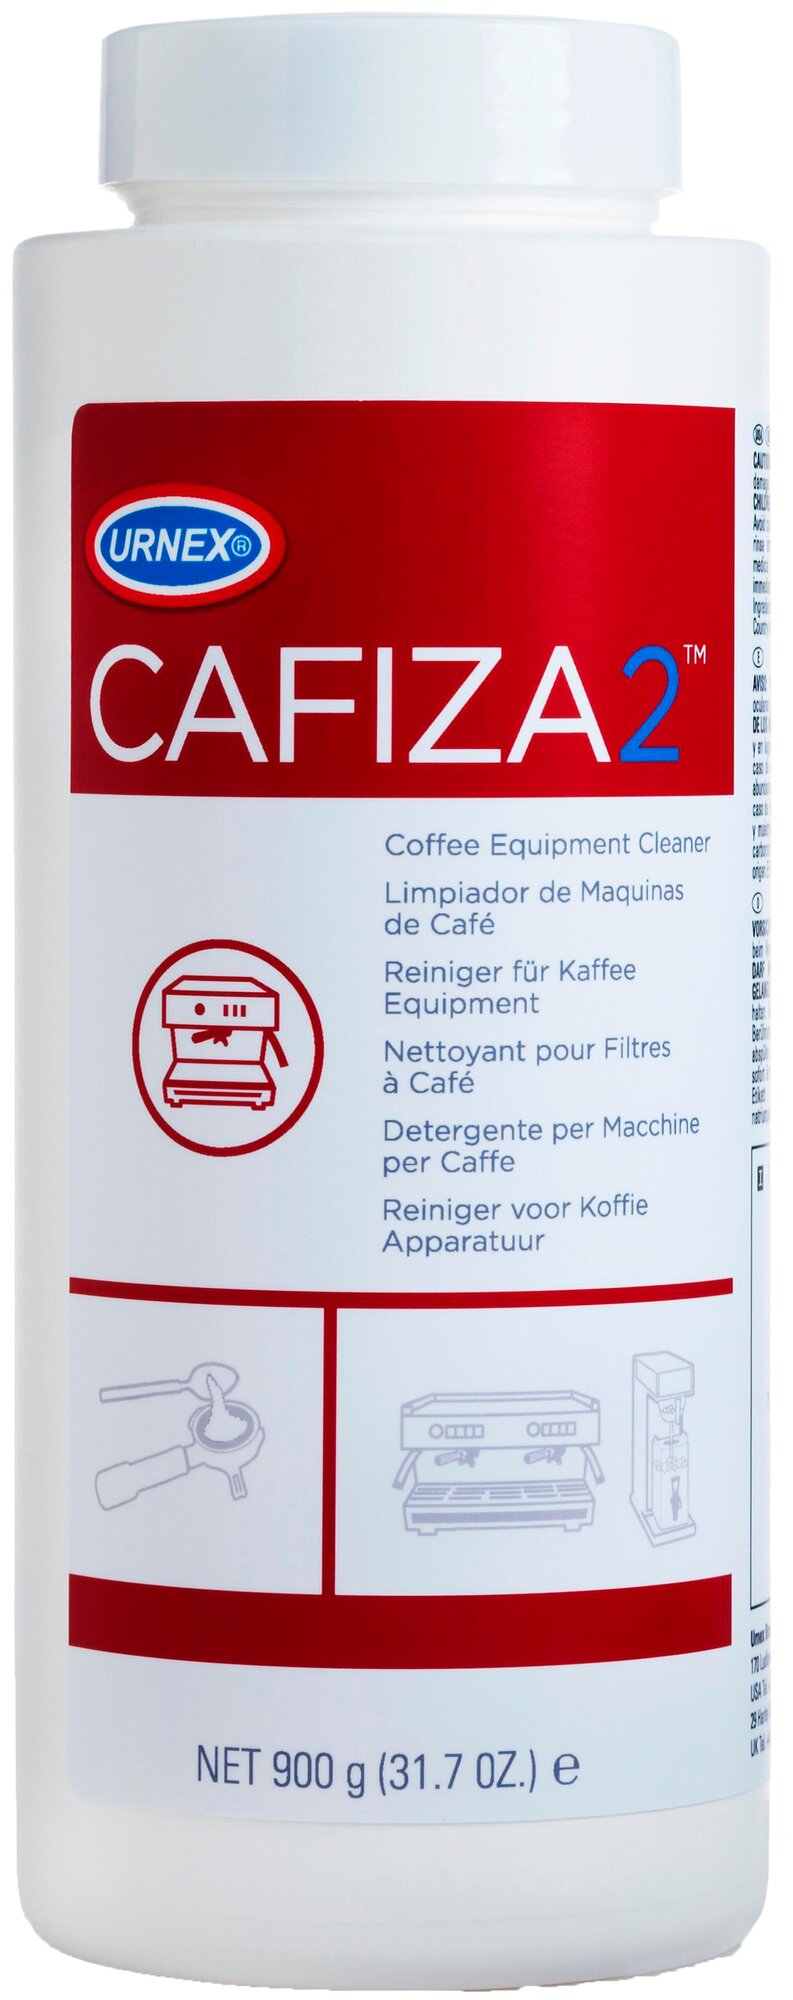 Порошок для чистки эспрессо-машин от кофейных масел Urnex Cafiza2 банка 900 гр